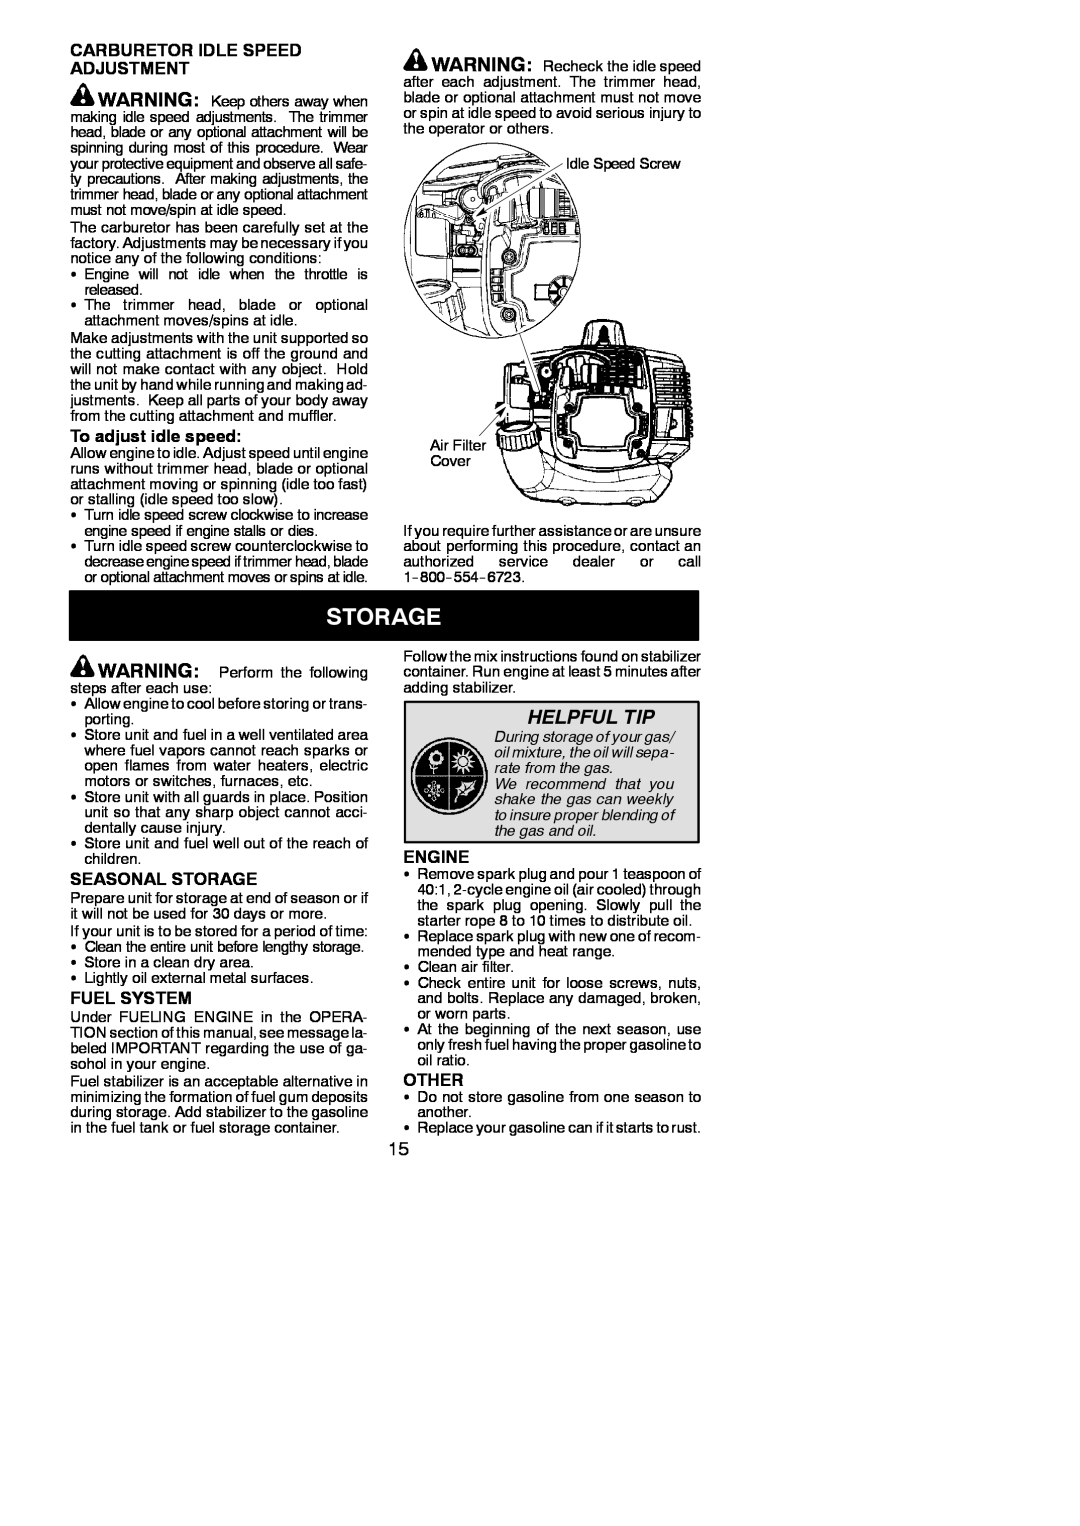 Poulan 545186846 Helpful Tip, Carburetor Idle Speed Adjustment, To adjust idle speed, Seasonal Storage, Fuel System 